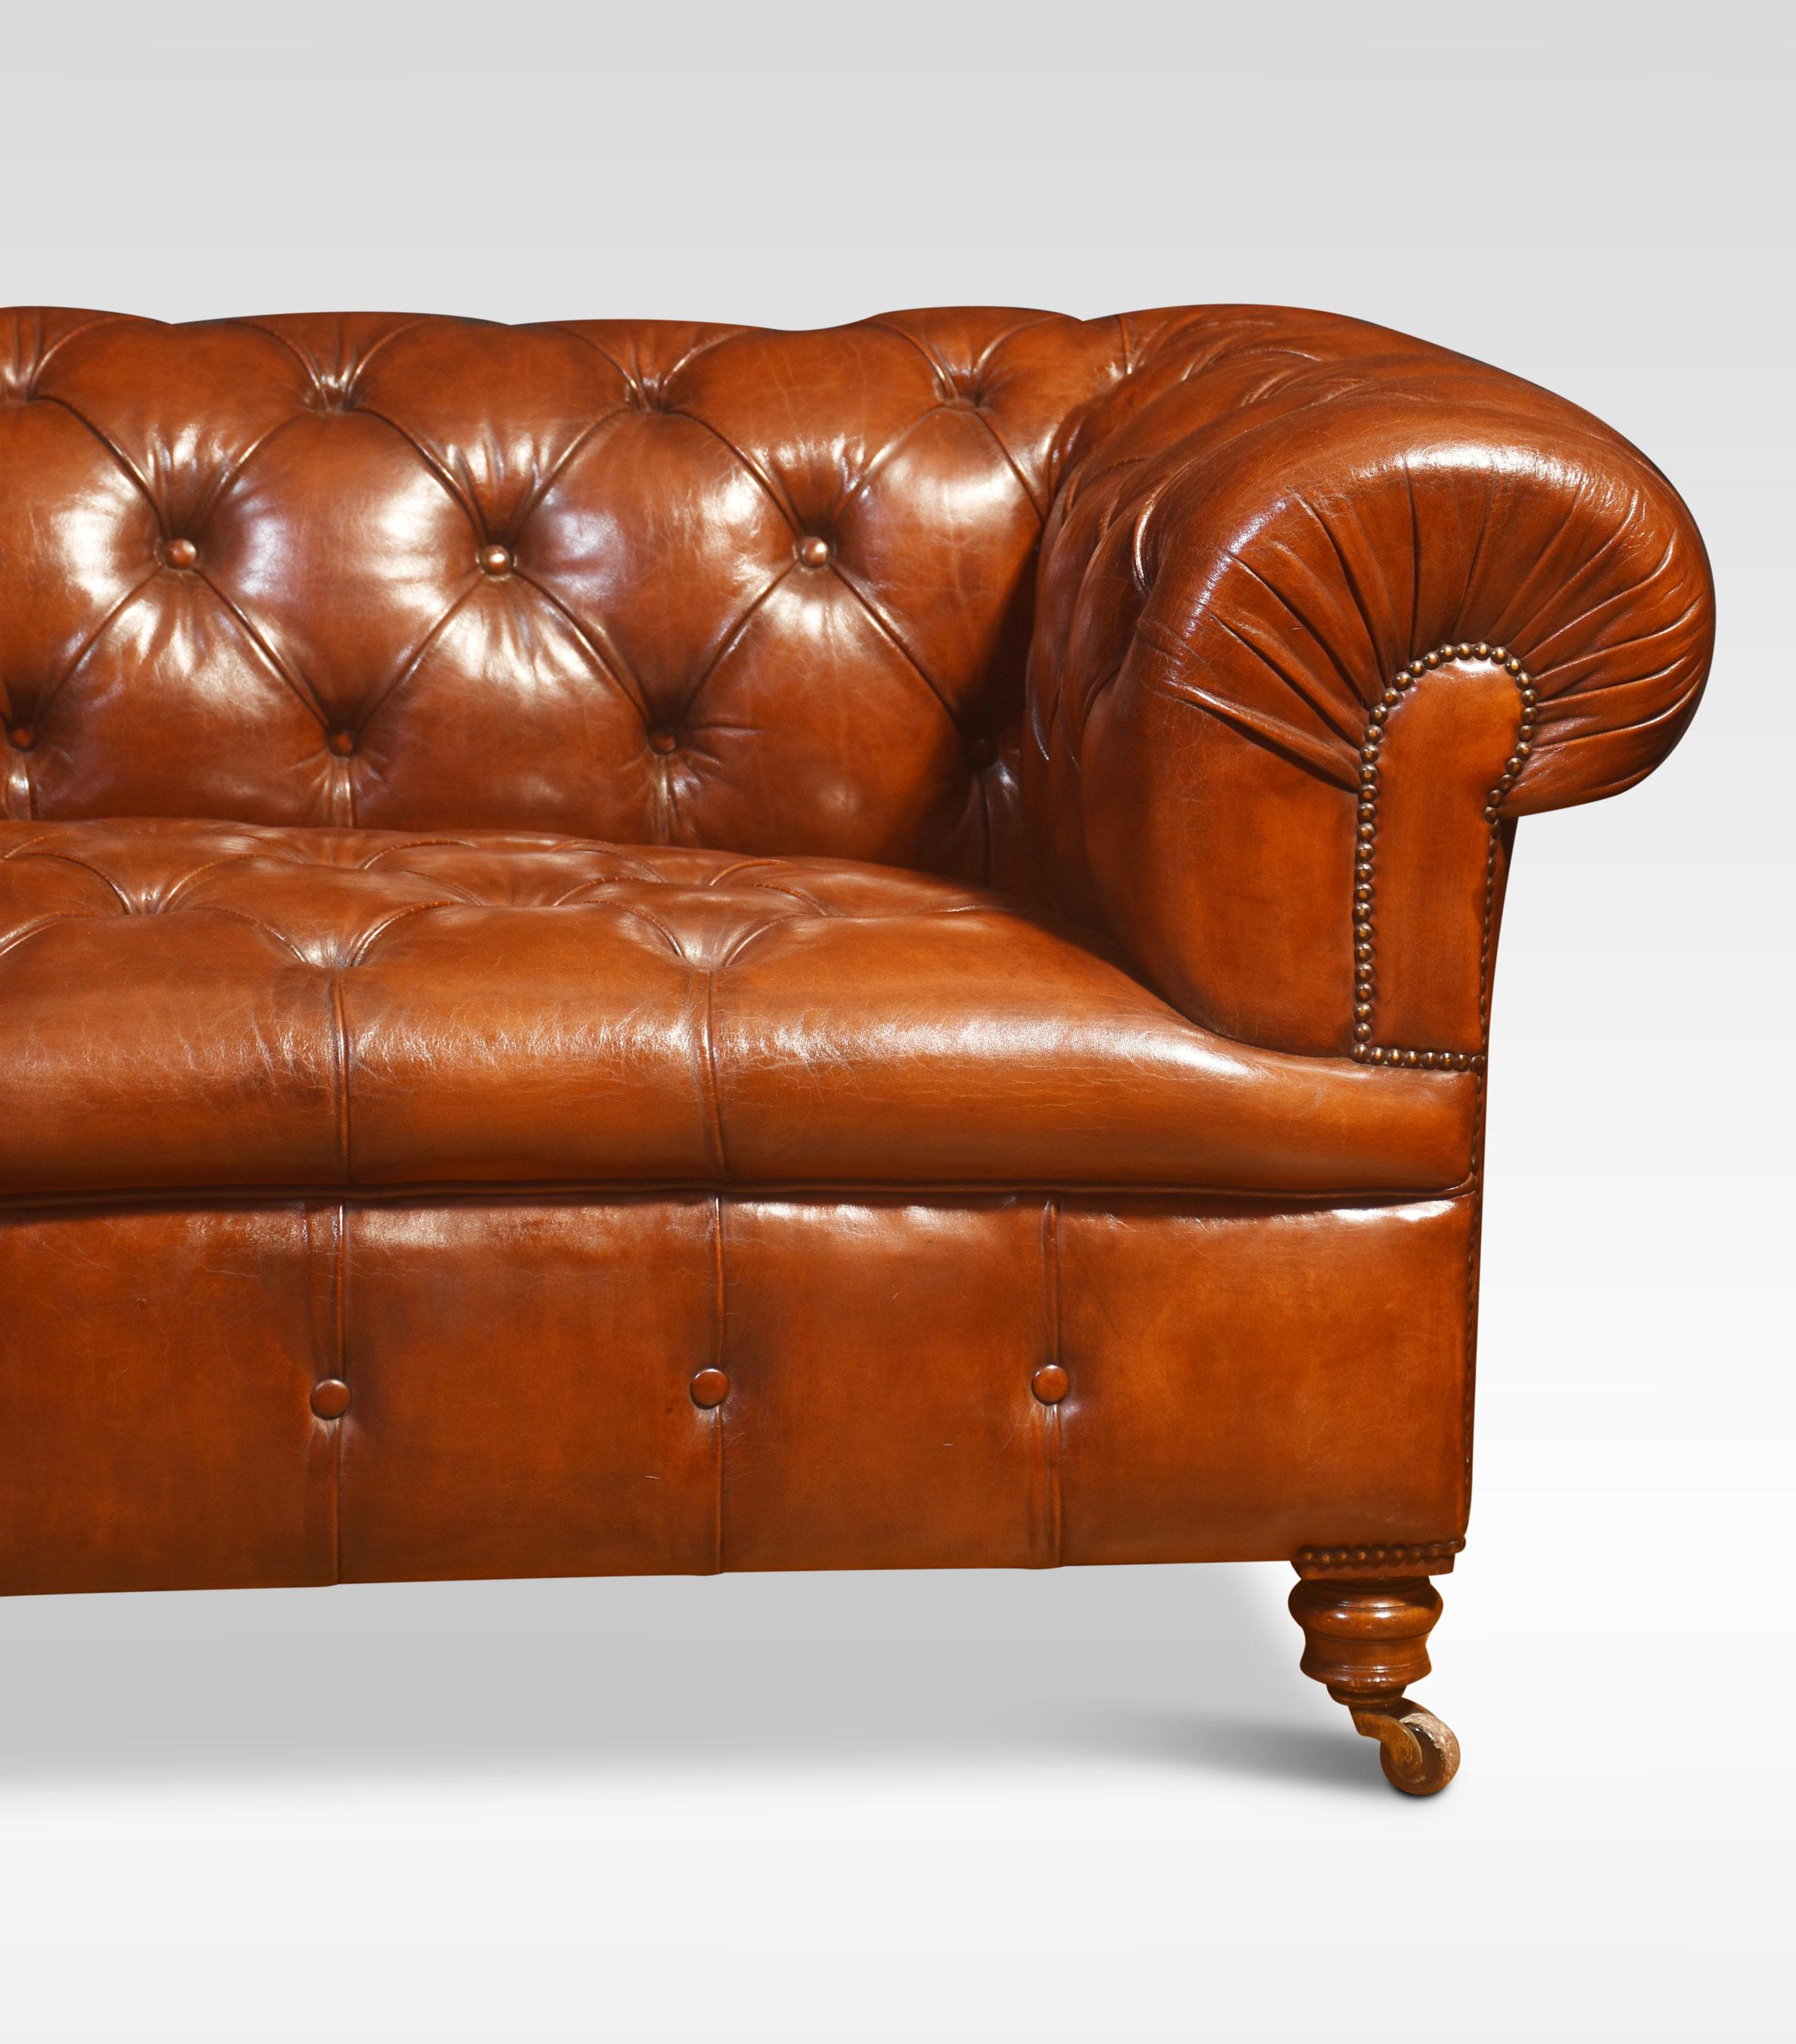 Großes Chesterfield-Sofa aus braunem Leder, mit tiefer, geknöpfter Rückenlehne und Sitzfläche, erhöht auf gedrechselten Füßen mit Keramikrollen aus Messing. Guter, solider Zustand, das Leder wurde ersetzt und handgefärbt.
Abmessungen
Höhe 29 Zoll